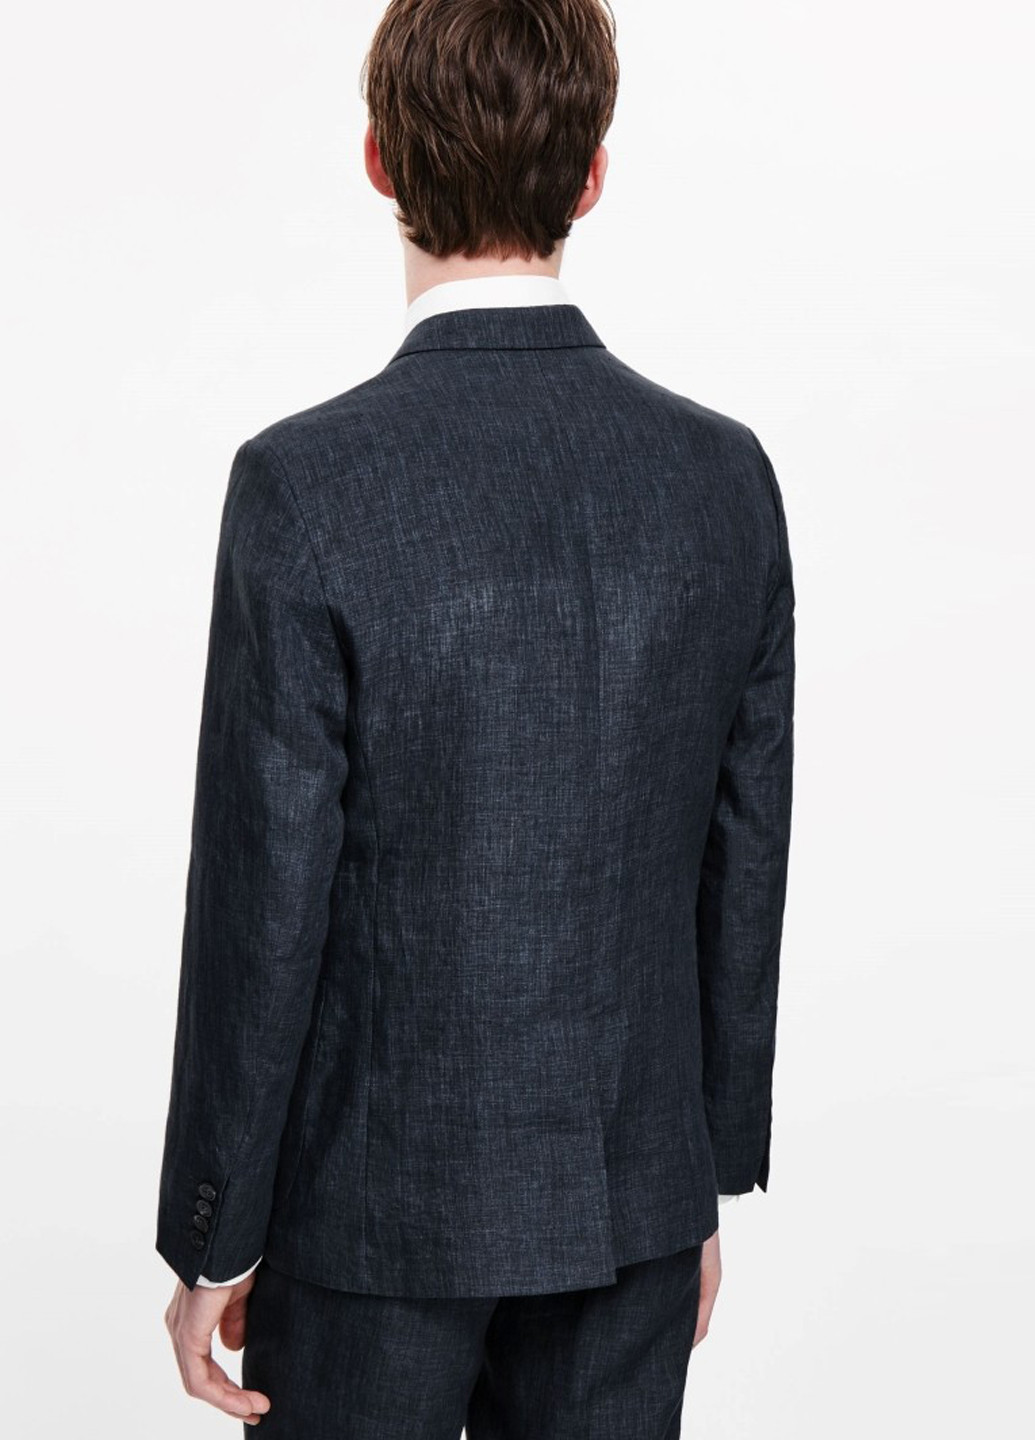 Пиджак Cos с длинным рукавом меланж тёмно-синий деловой